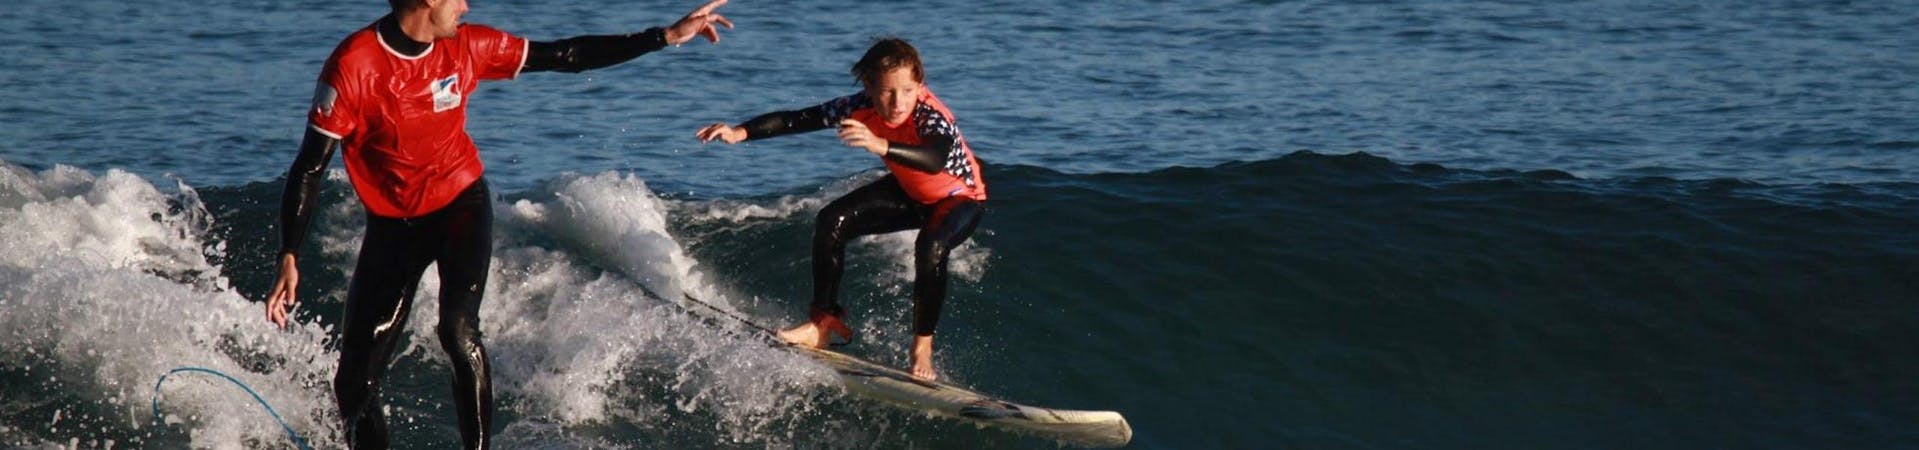 Un niño participa en el Curso de Surf - incl. Traslado - Intermedio con Gold Coast Hendaya.